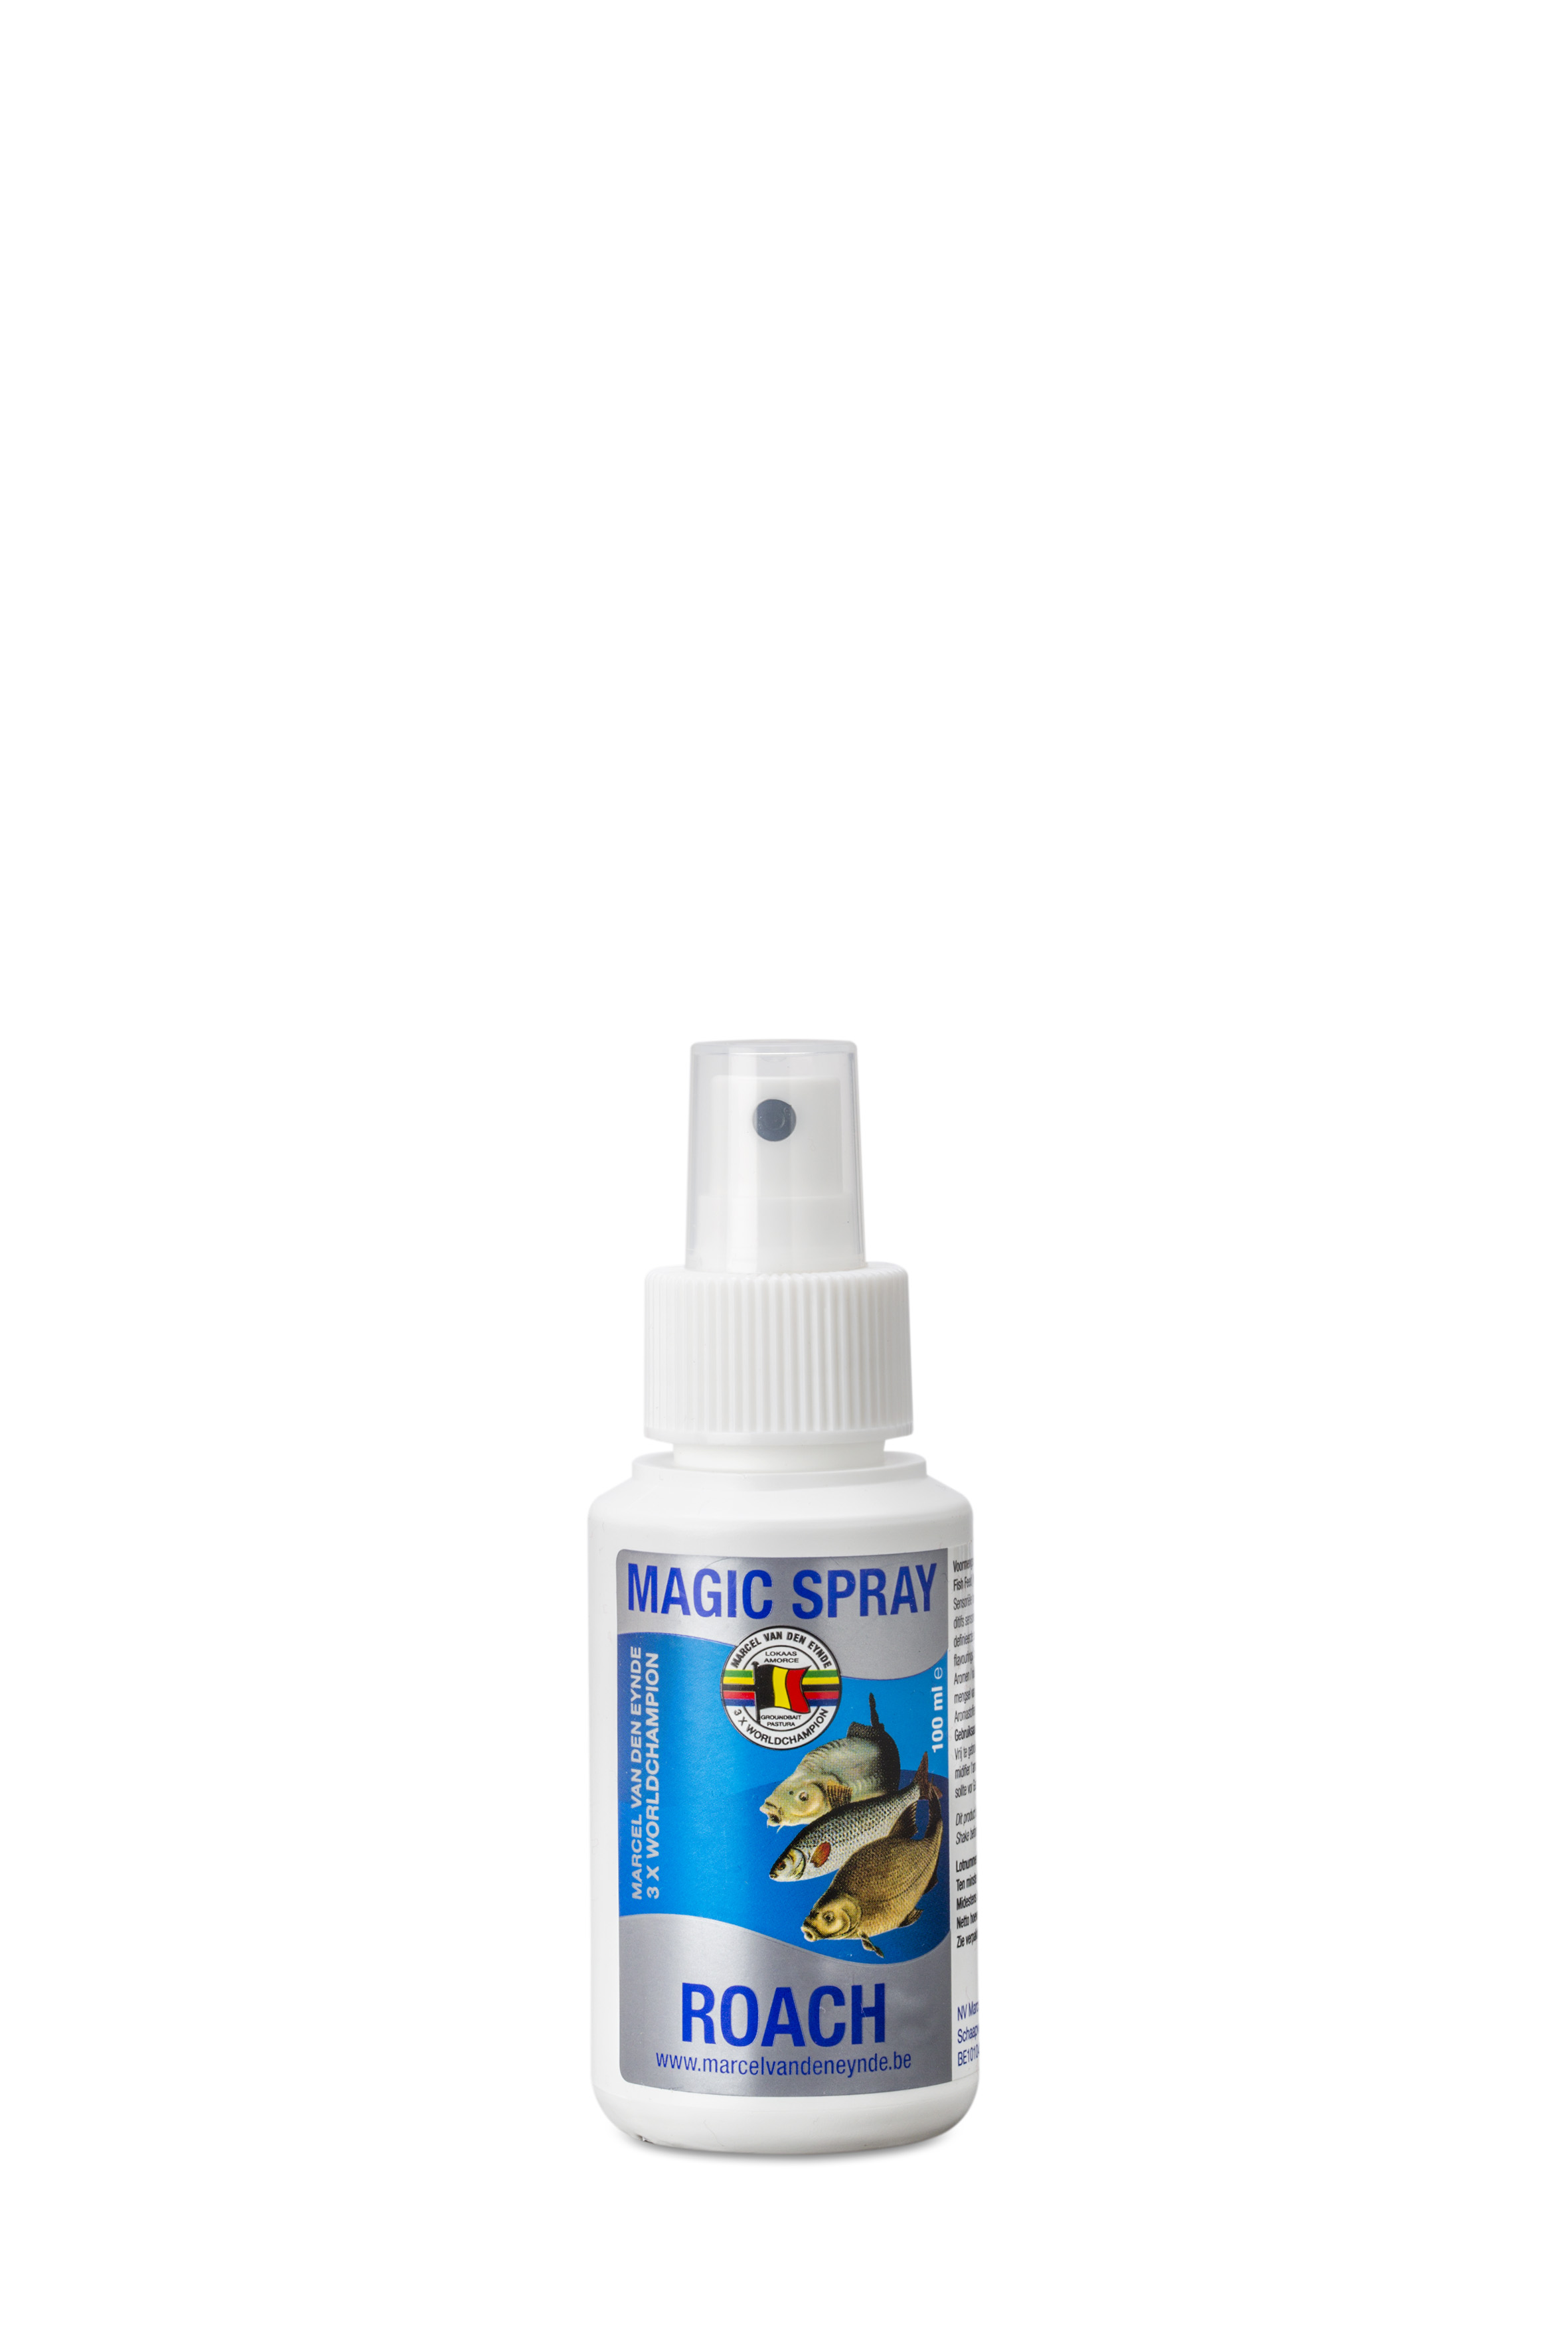 VDE Magic Spray Roach 100 ml. (Dostupni i Tigernut, Shell Fish, Strawberry etc) - Aditivi za miris i ukus mogu se koristiti na različite načine u ribolovnom sportu. Svrha je da se mamac učini privlačnijim za ribu. Takođe se može koristiti za povećanje atraktivnosti na udicu. Sistem za prskanje je adekvatan za ovu svrhu. Upotreba je vrlo jednostavna, možete prskati mamac na udici odmah nakon što stavite mamac na nju. Cijena: 10 BAM